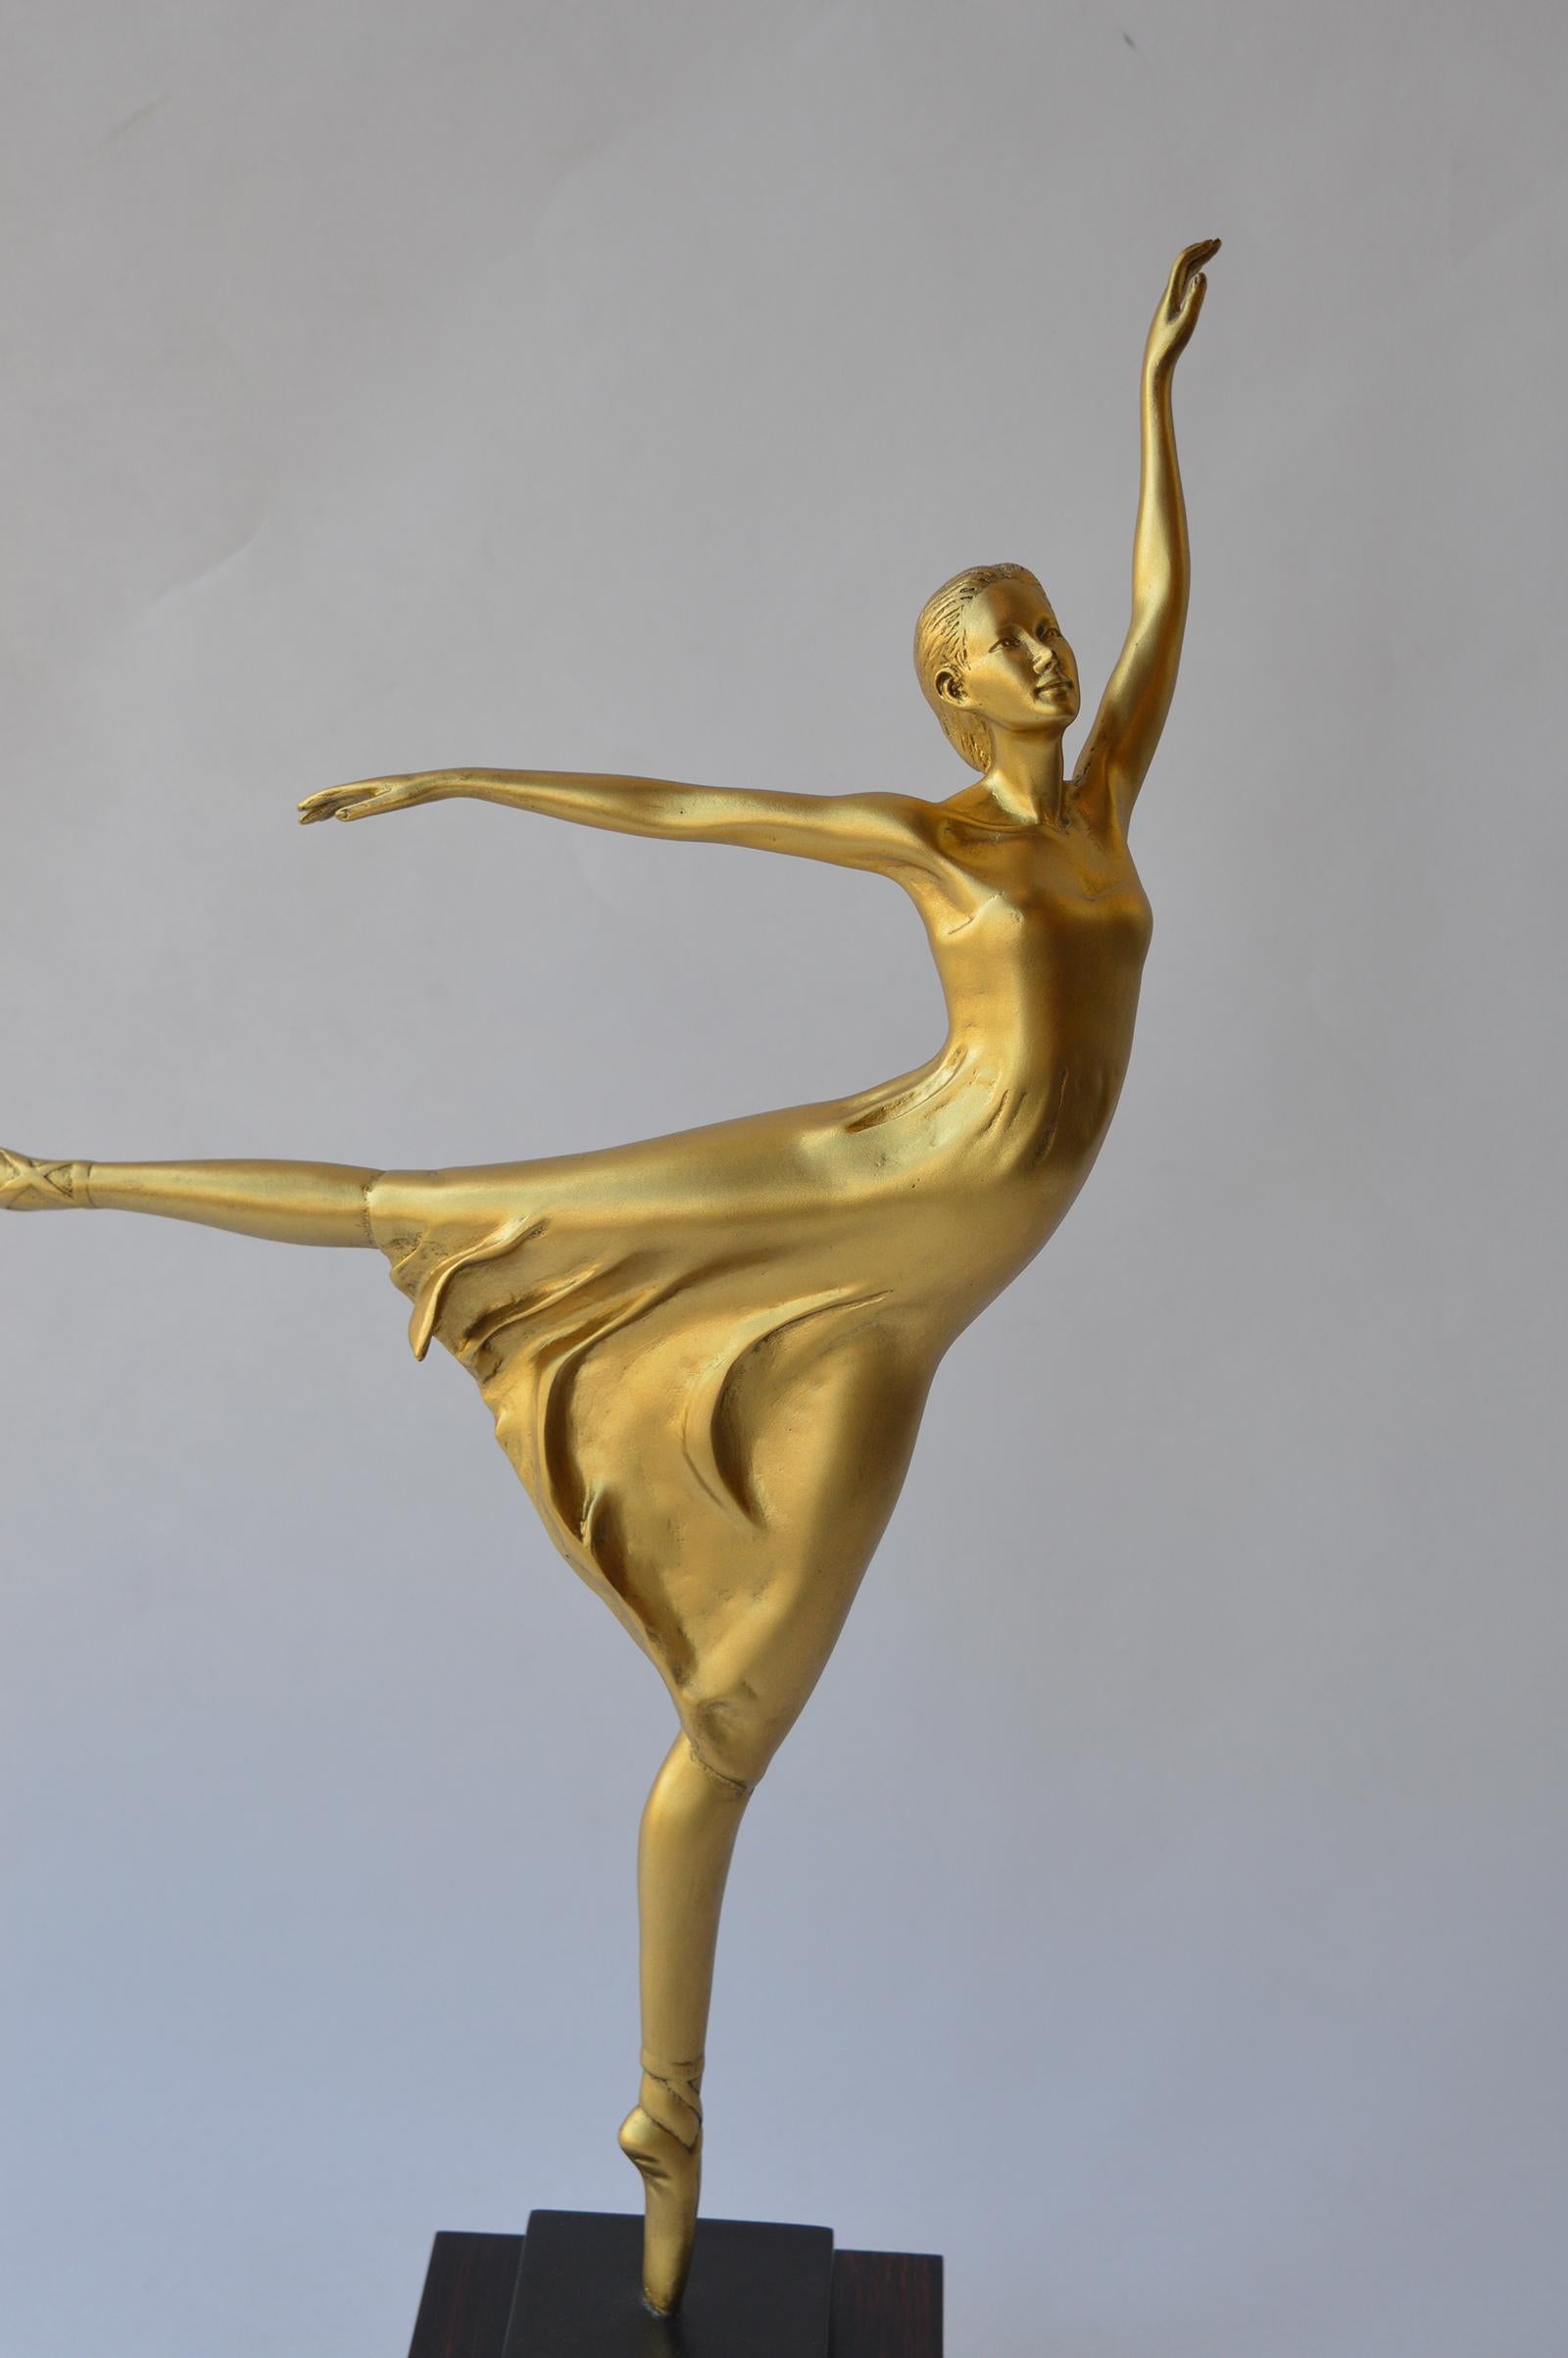 Dancing Ballerina sculpture.